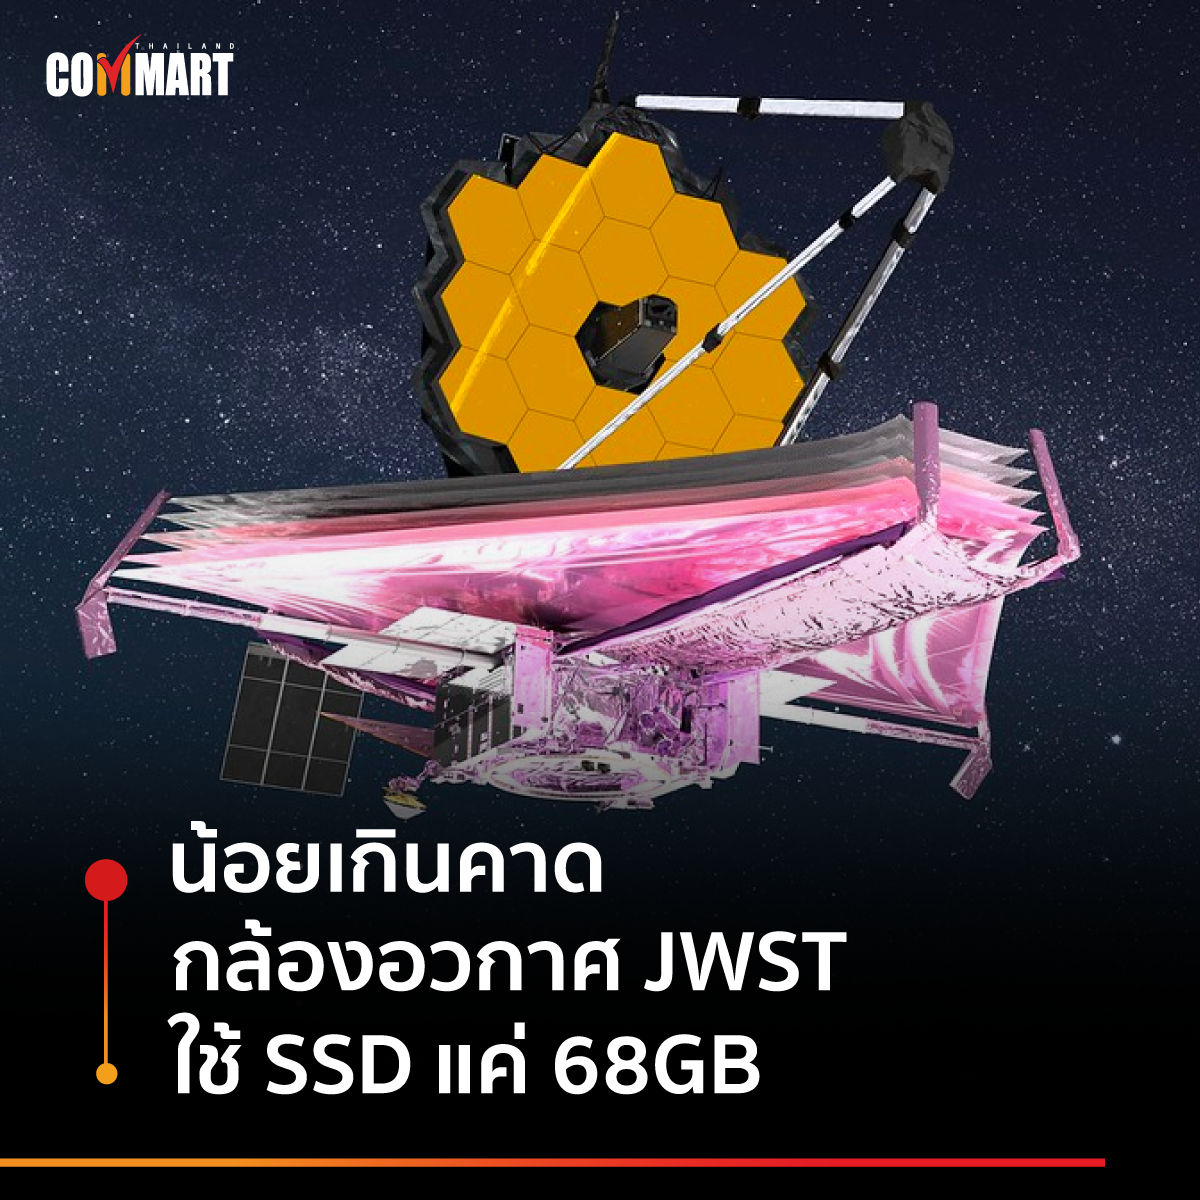 น้อยเกินคาด กล้องอวกาศ JWST ใช้ SSD ขนาดเพียง 68GB